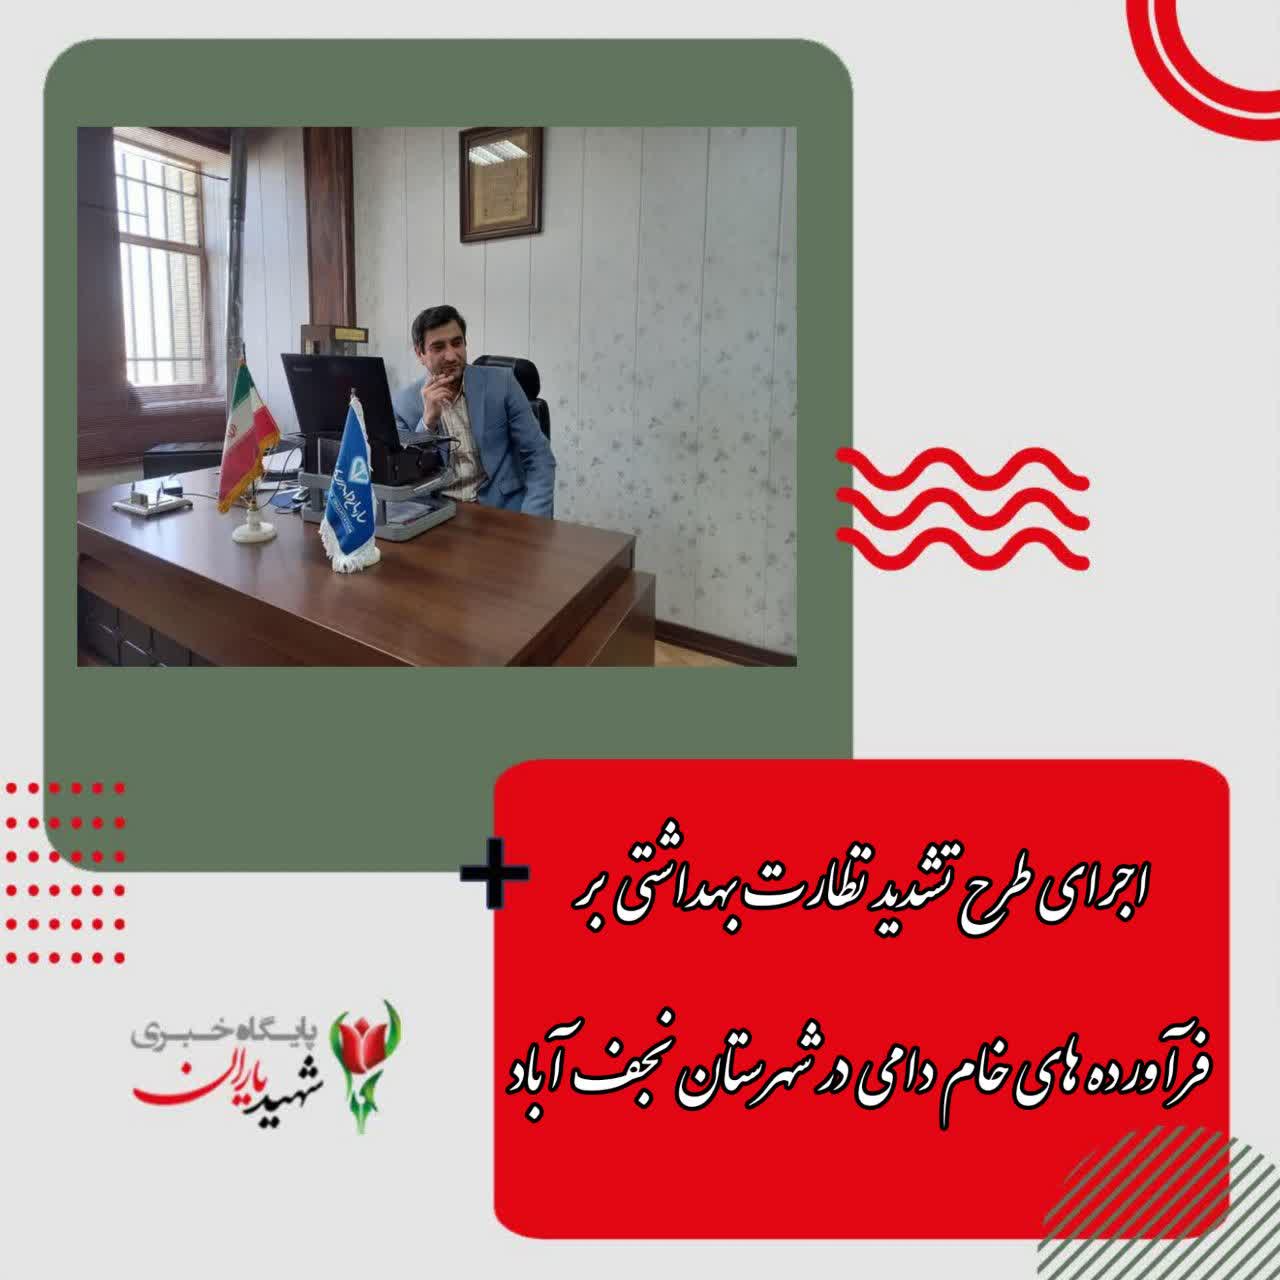 رئیس شبکه دامپزشکی شهرستان نجف آباد اعلام کرد: